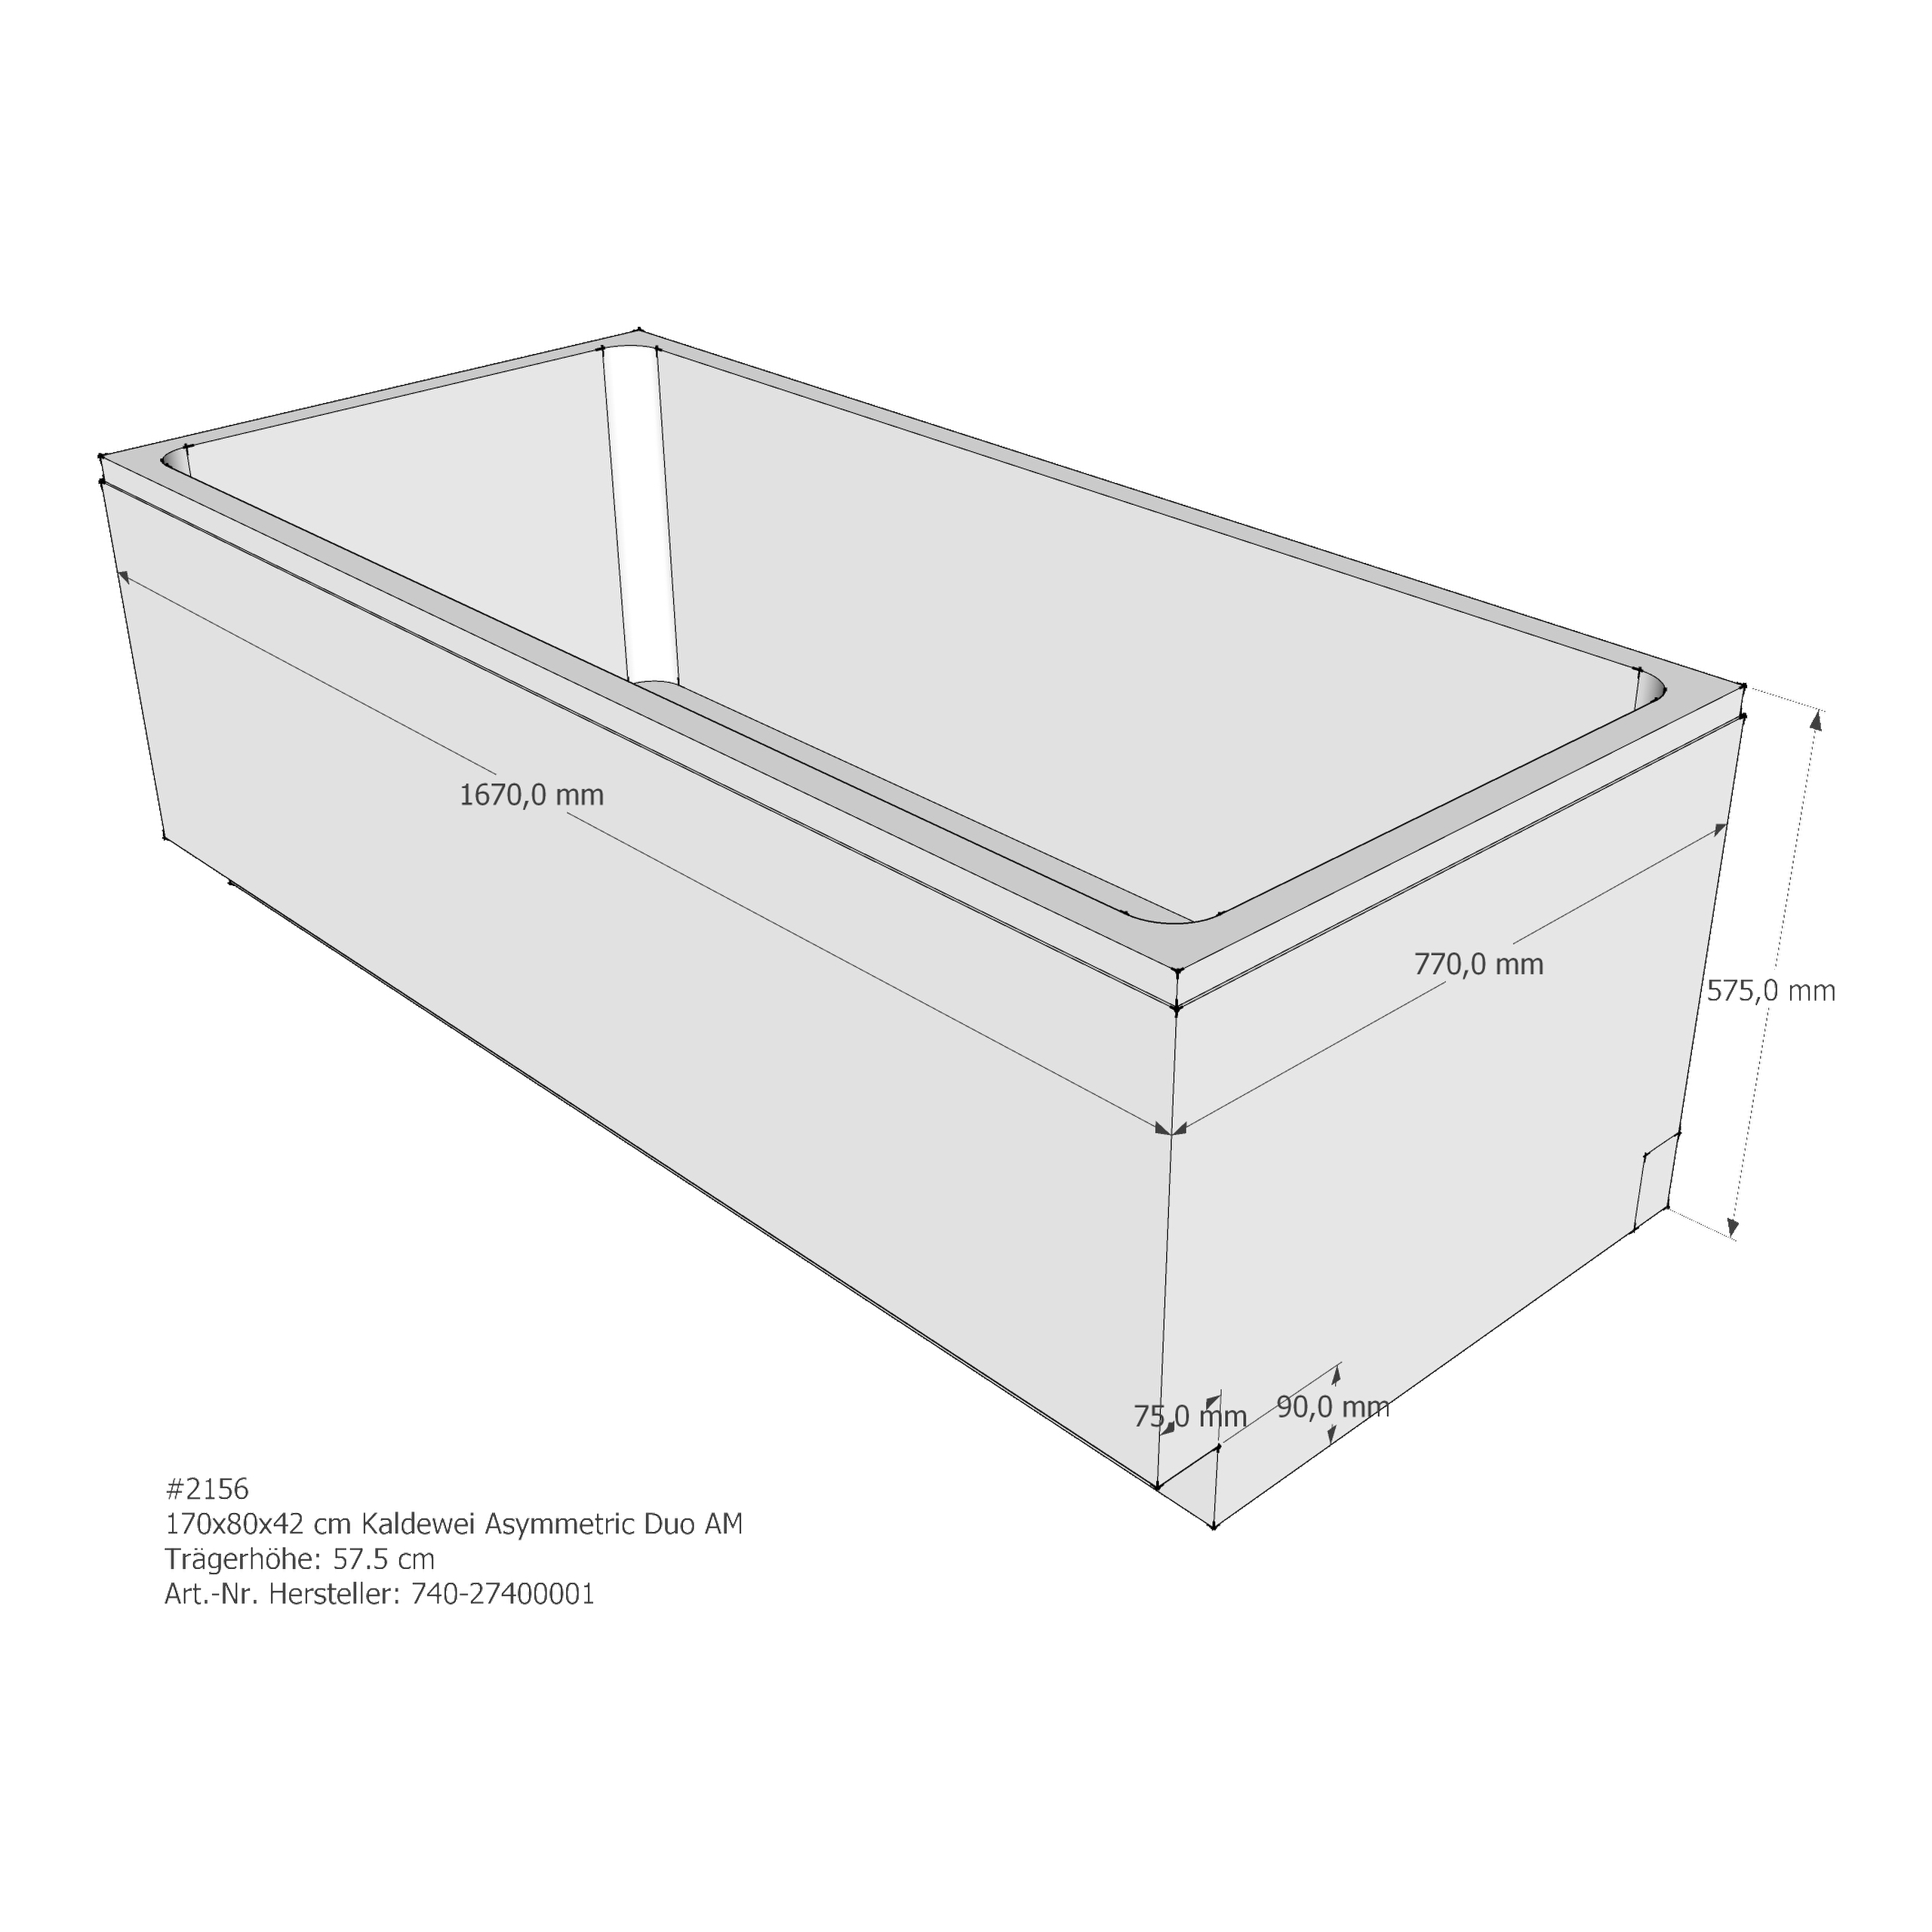 Badewannenträger für Kaldewei Asymetric Duo 170 × 80 × 42 cm